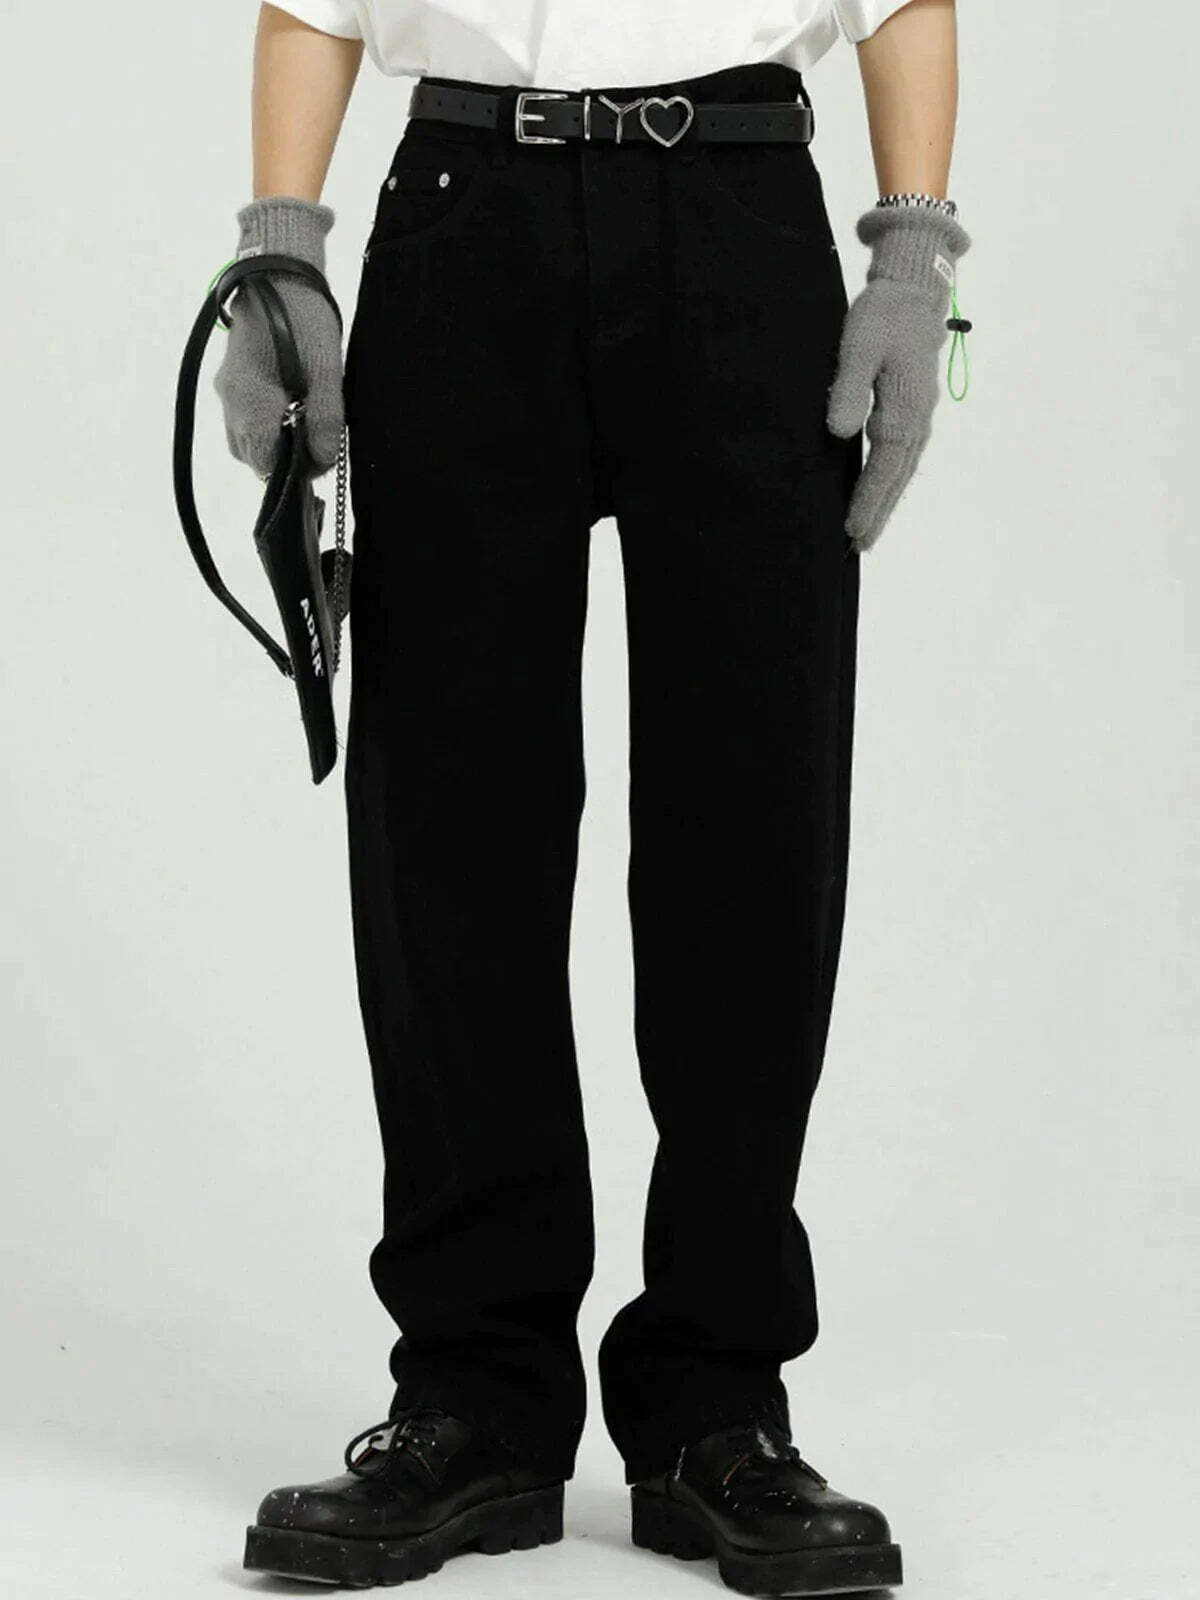 statement zip jeans edgy & sleek streetwear 2505